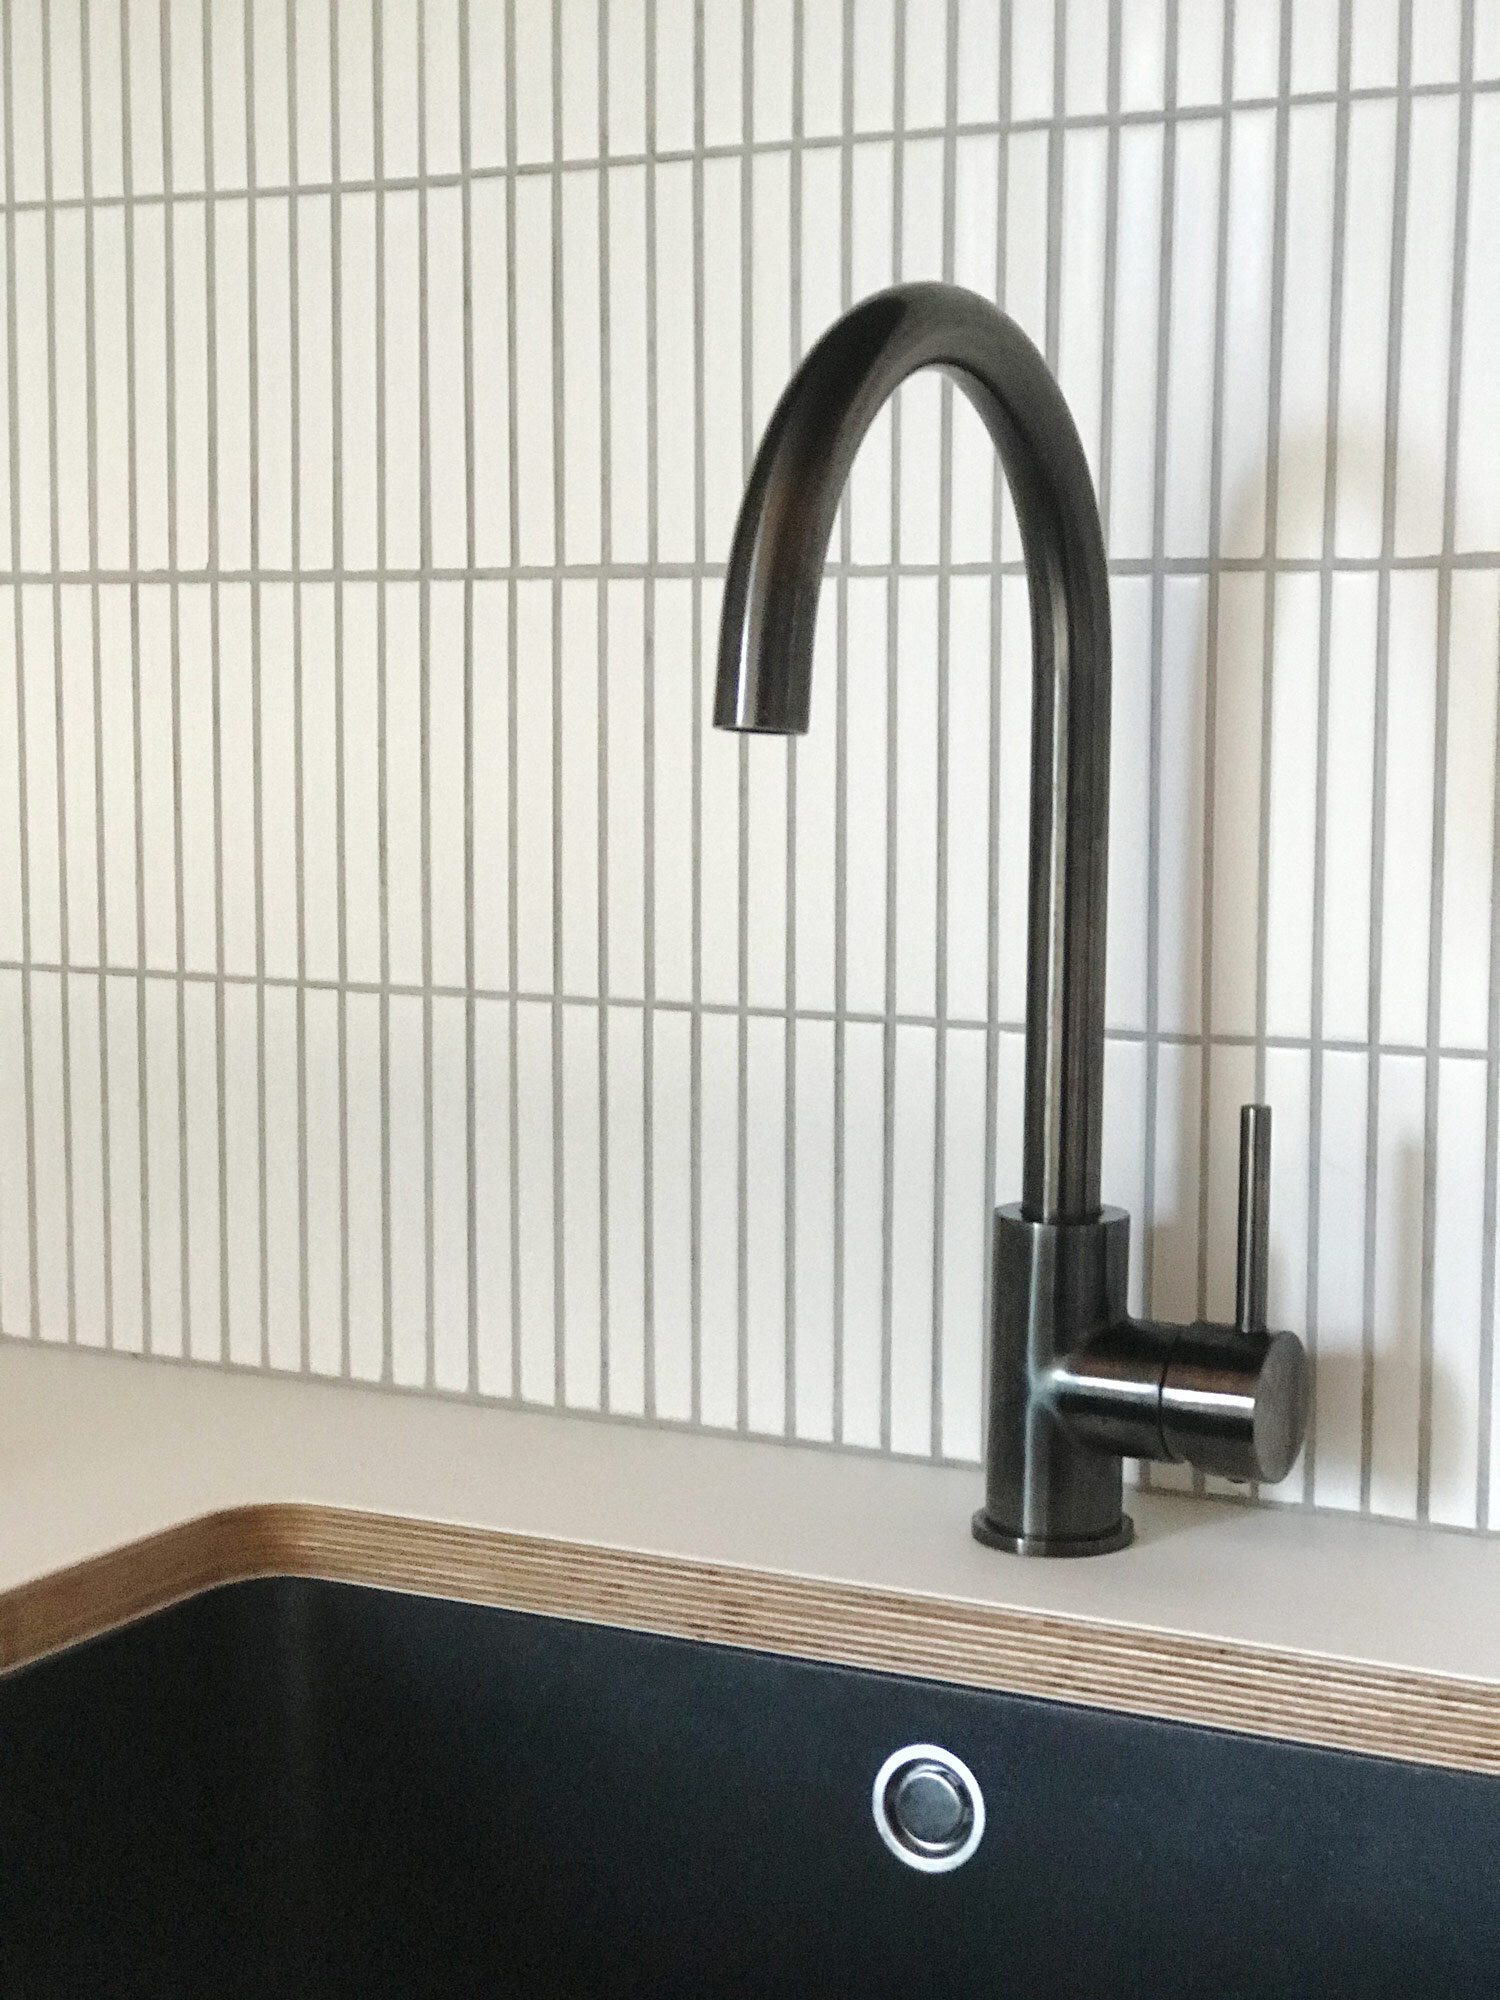 kitchenette-with-finge-tiles-and-black-tap-motide-raglan-nz-ploen.jpg